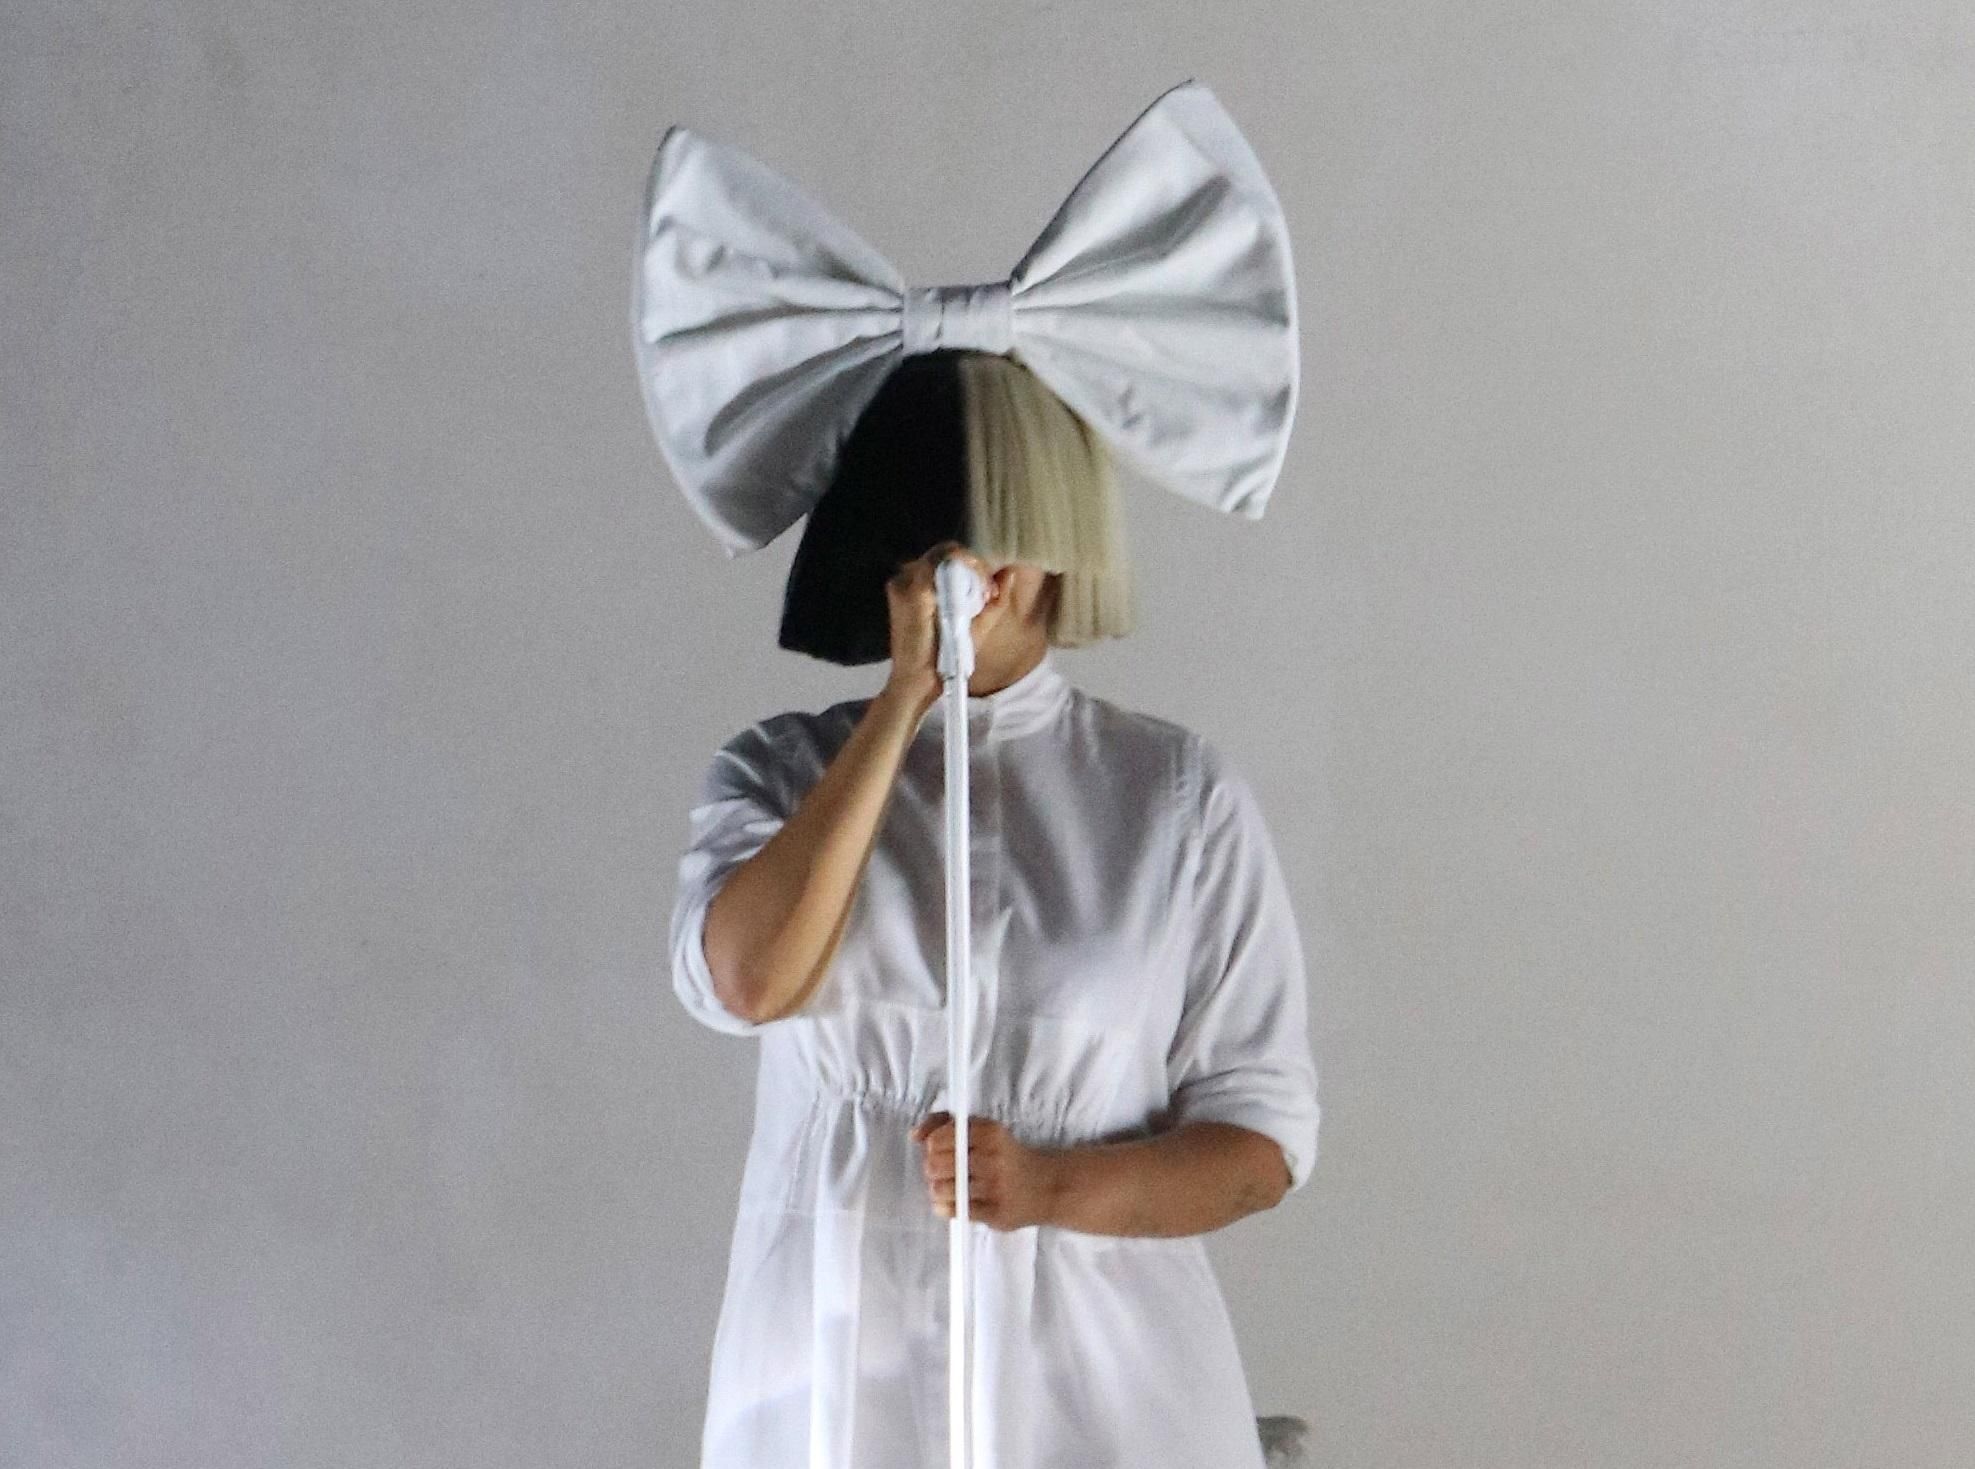 Співачка Sia страждає від неврологічного розладу: подробиці